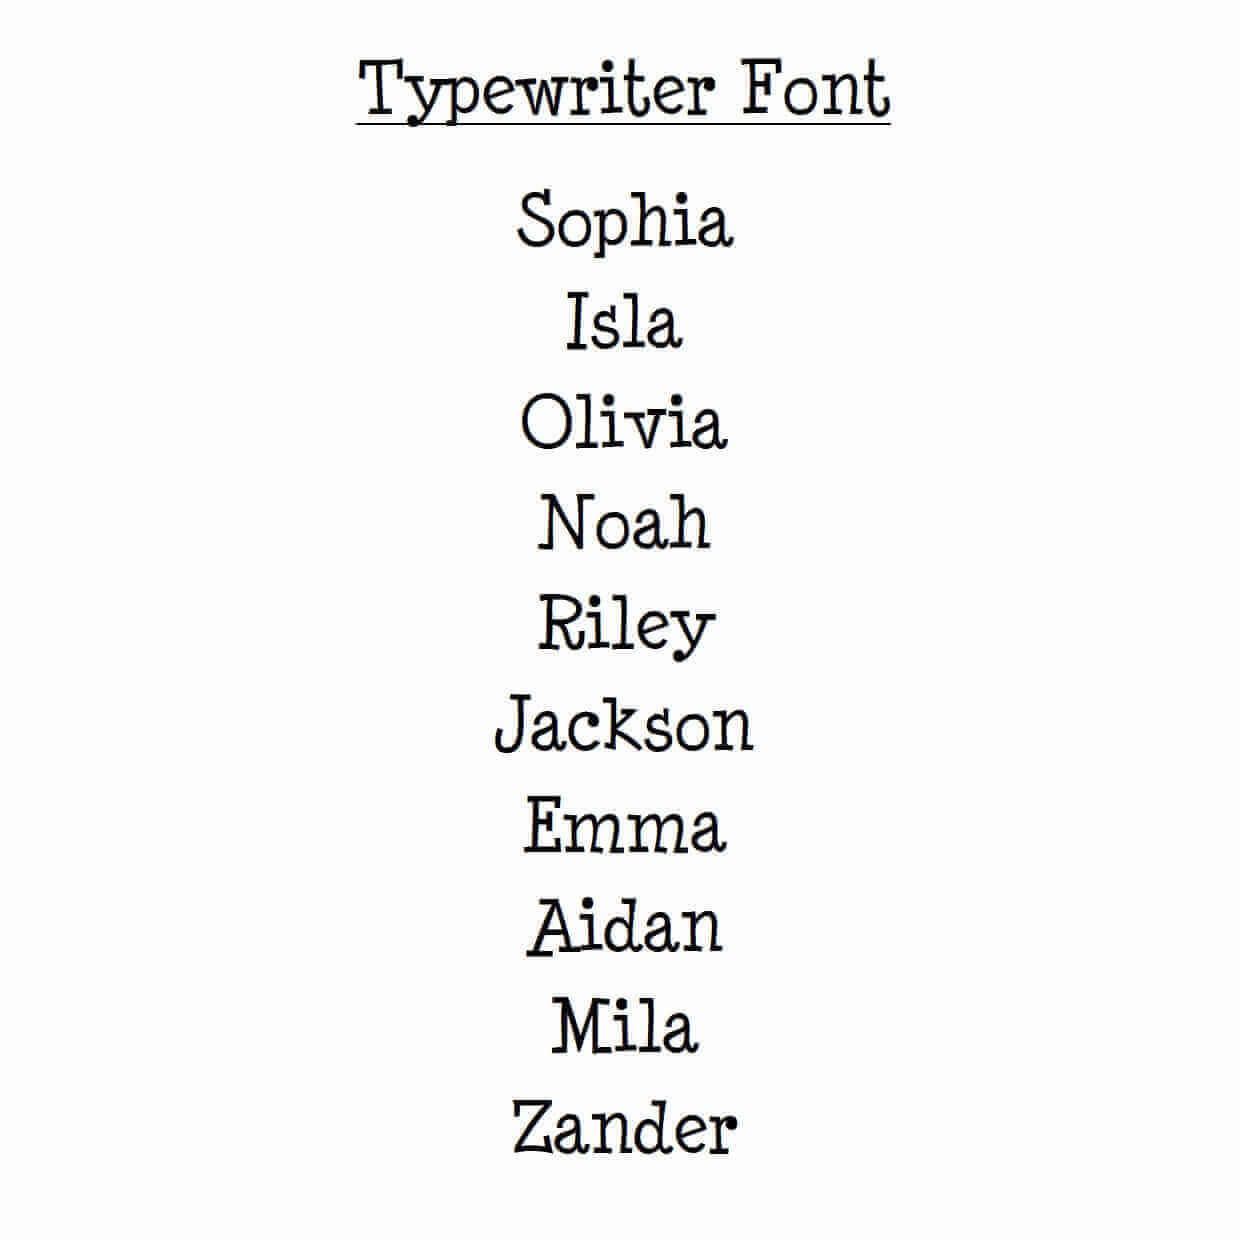 Typewriter Font Example